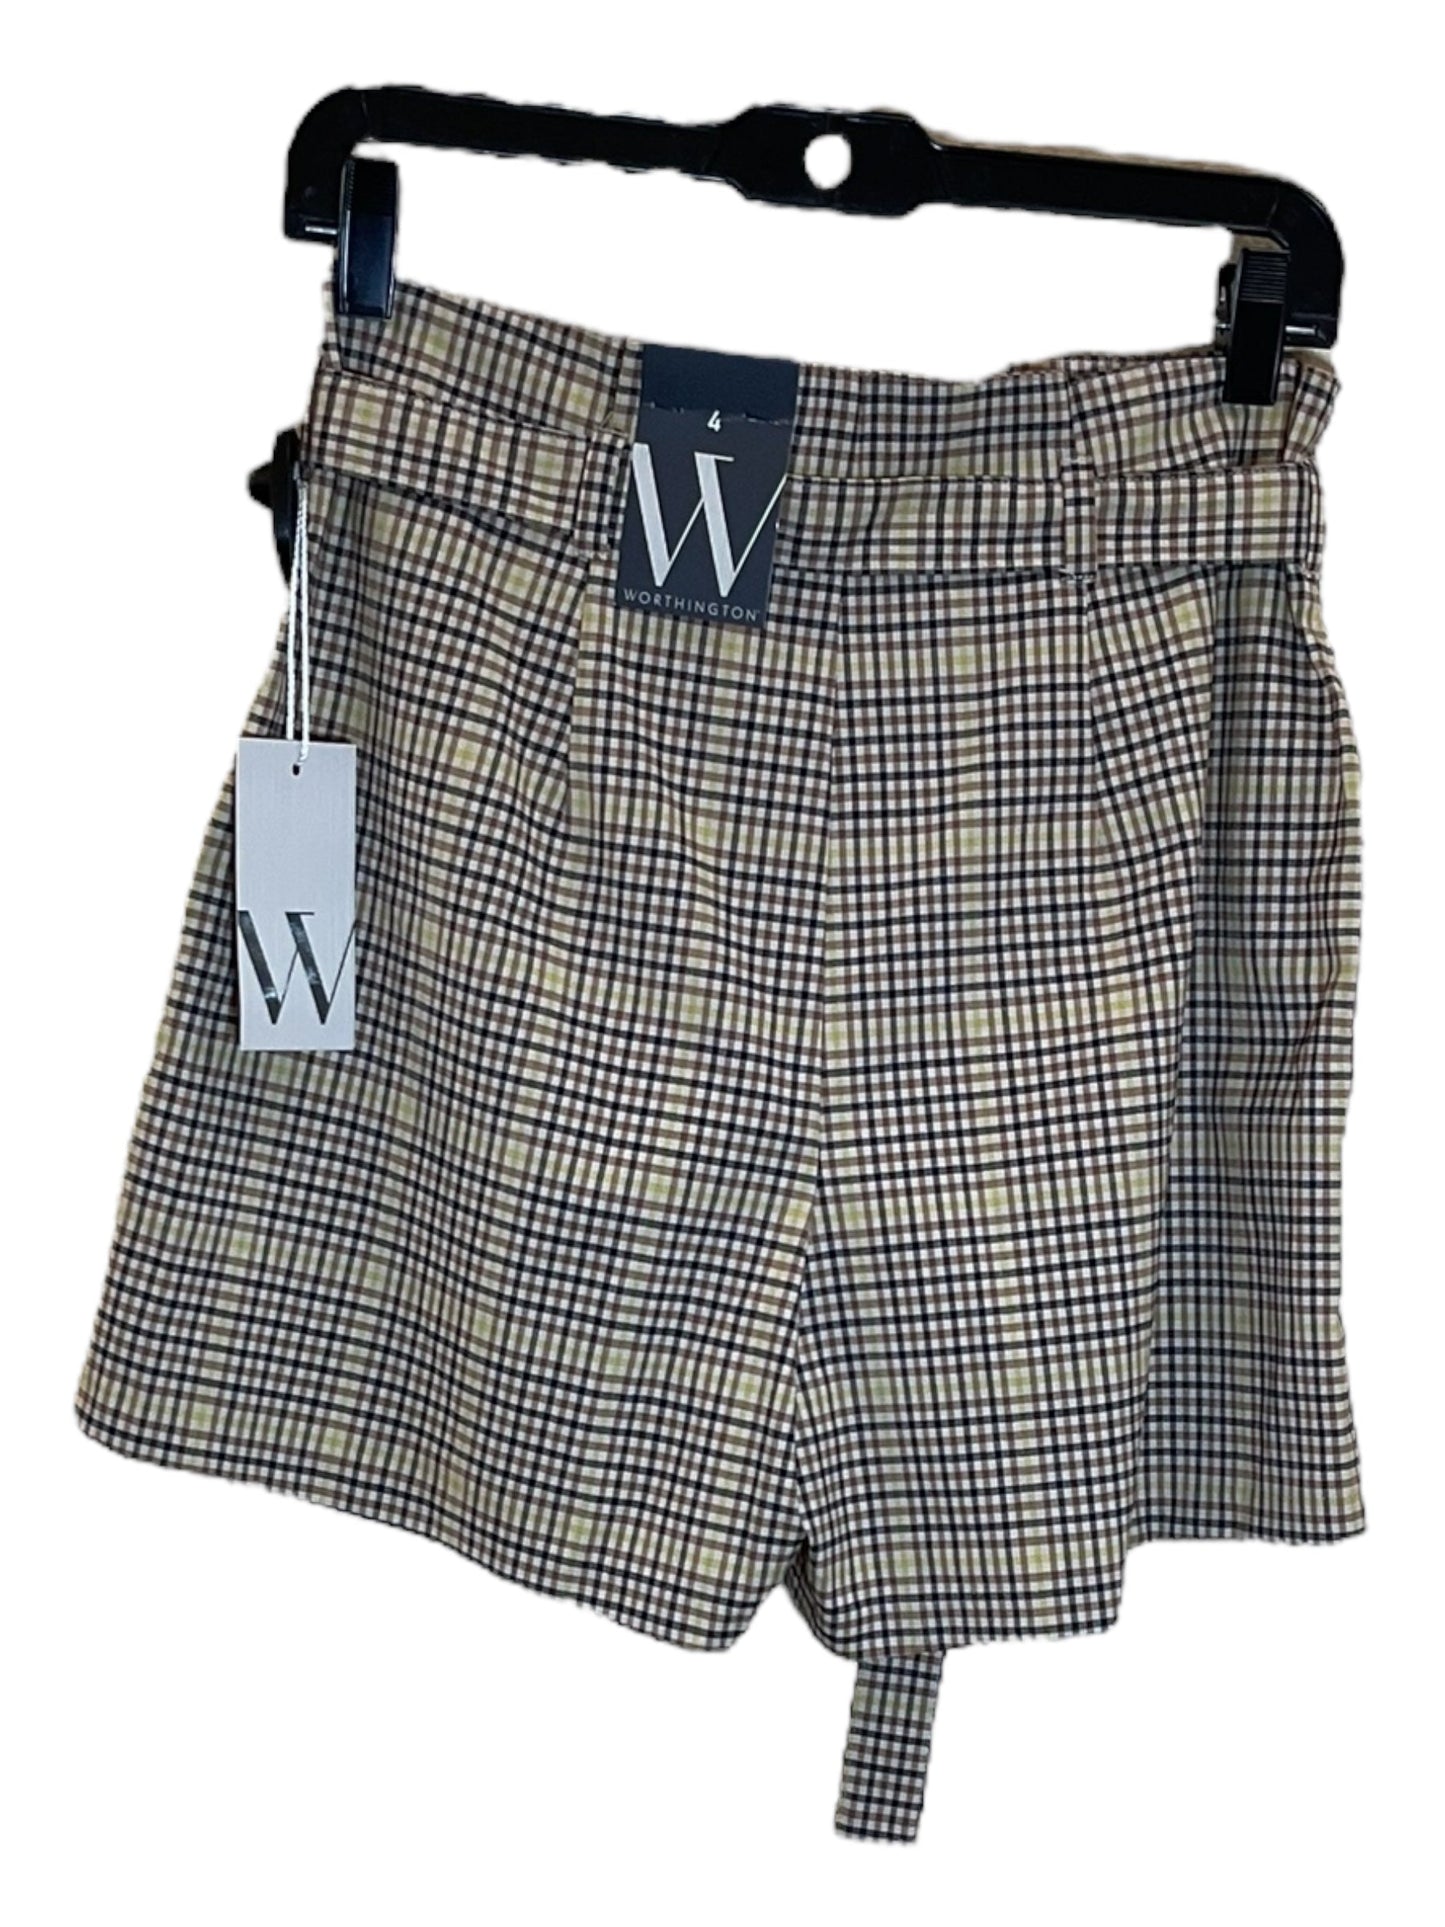 Plaid Pattern Shorts Worthington, Size 4